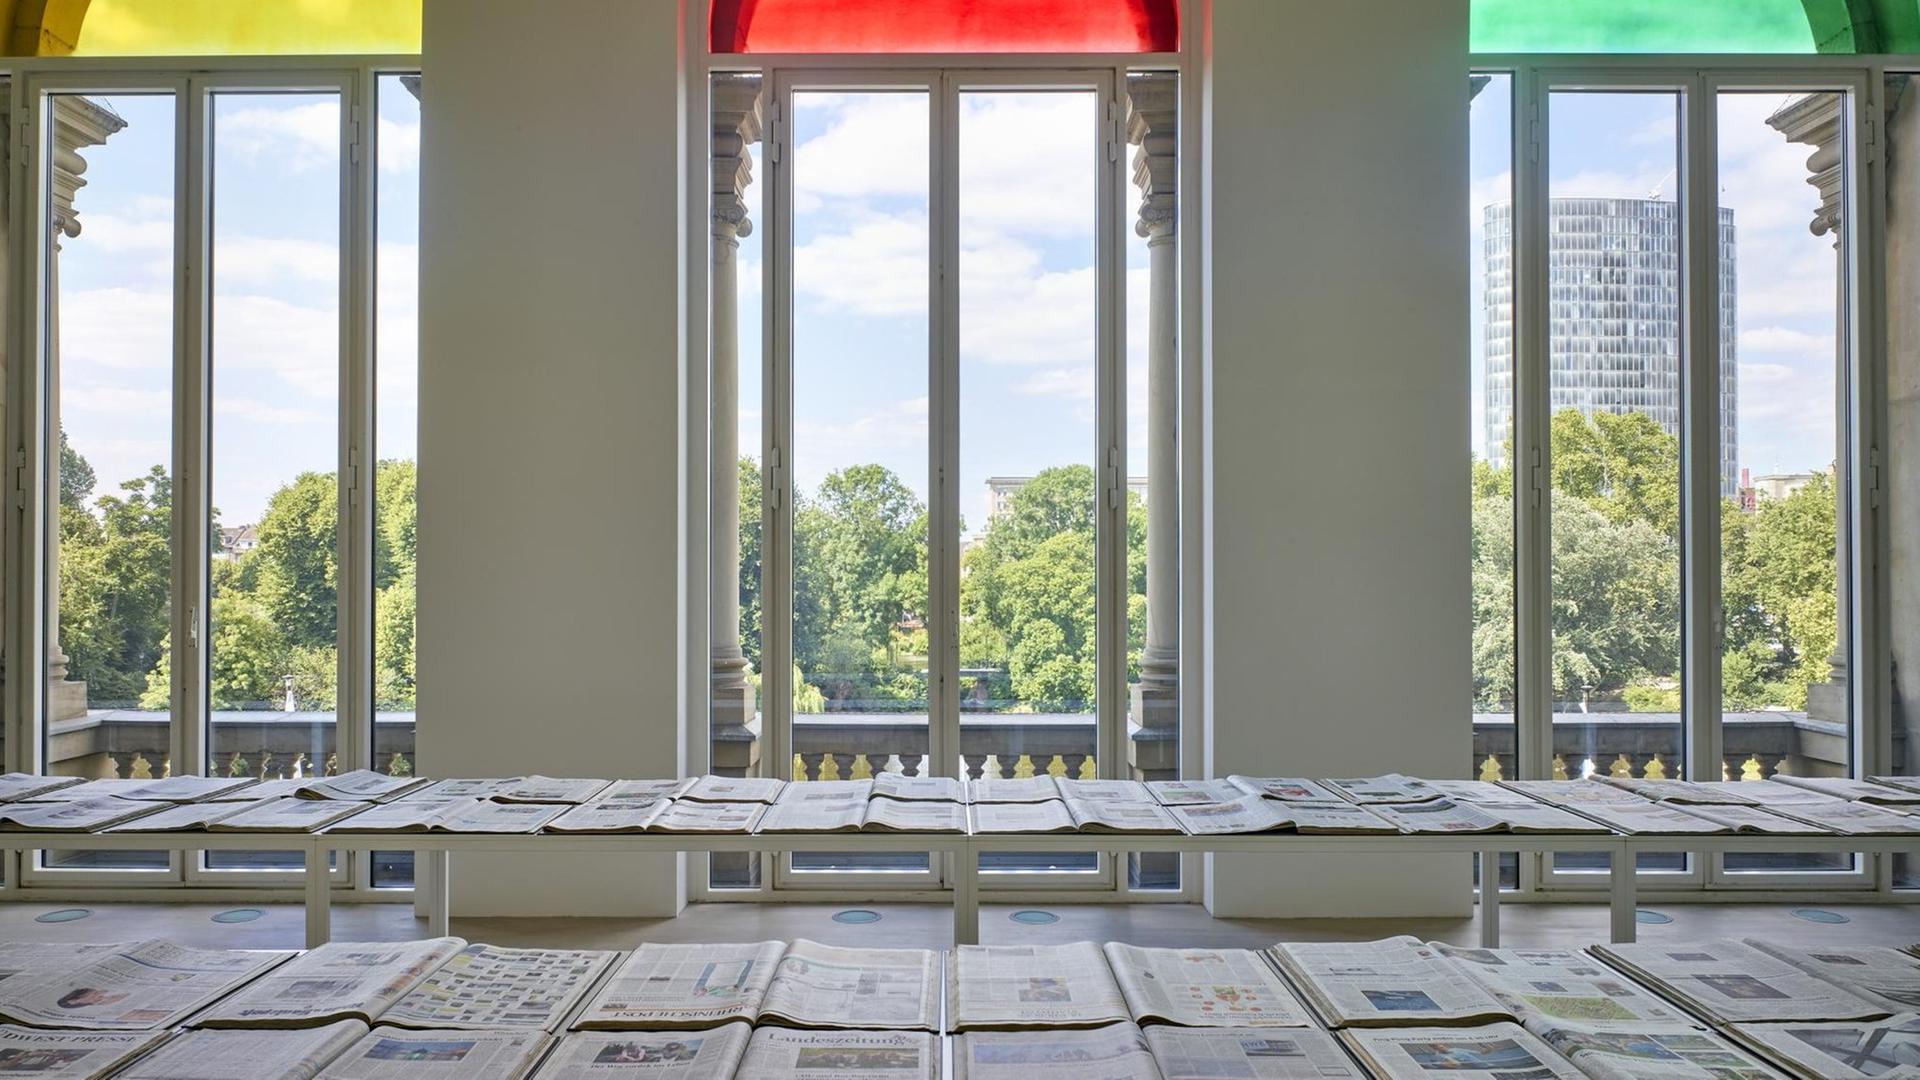 Blick über die Ausstellung durch drei Fenster nach draußen